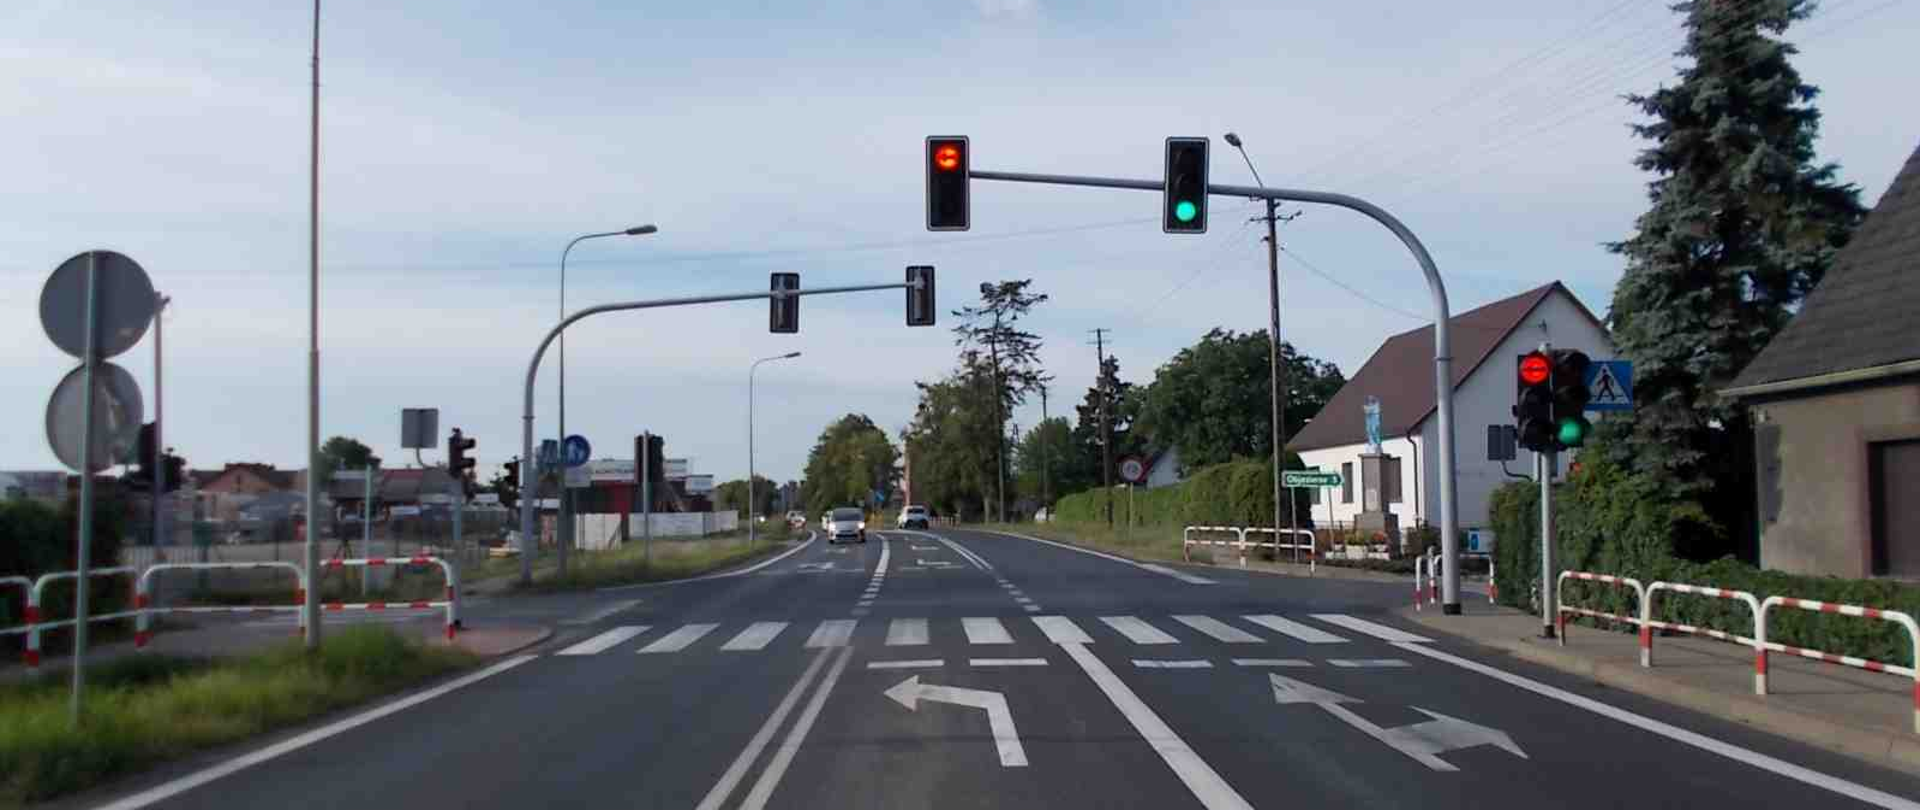 Skrzyżowanie dróg z sygnalizacją i przejściem dla pieszych